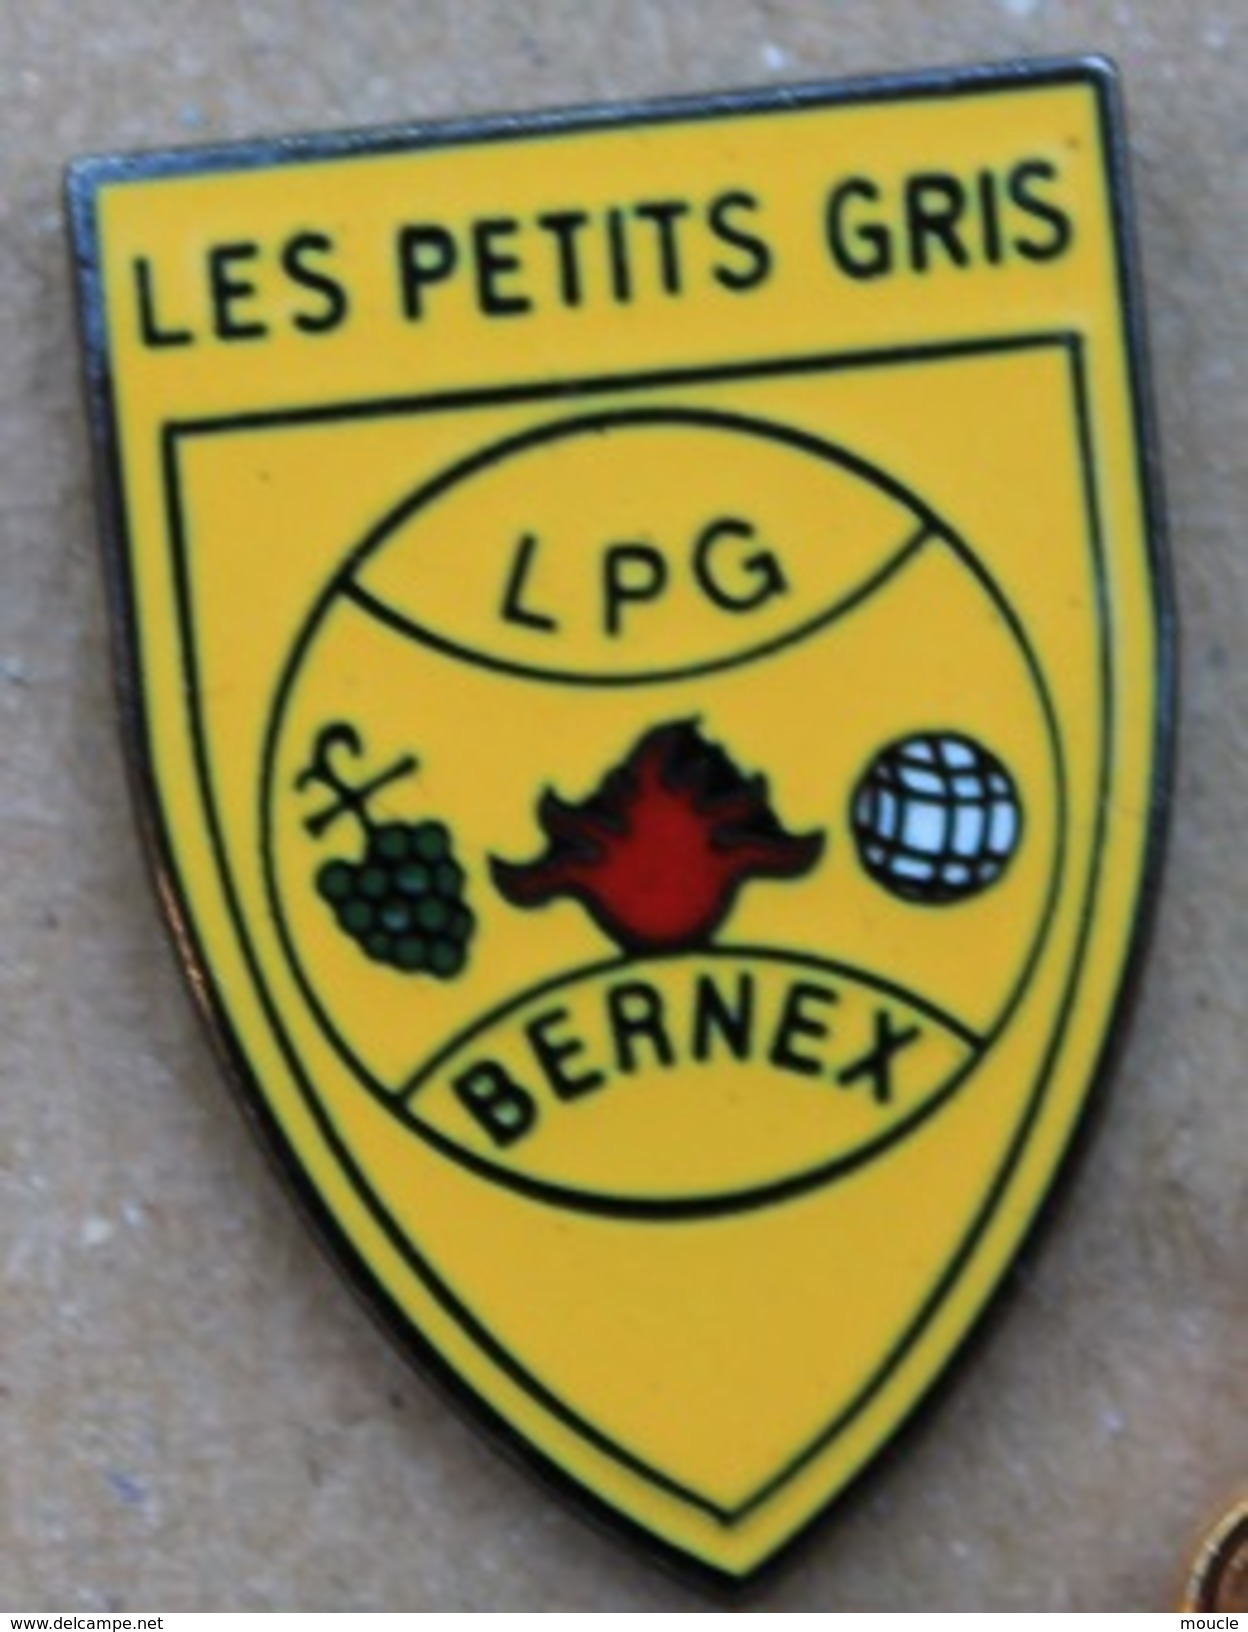 LES PETITS GRIS - LPG - CLUB DE PETANQUE - BERNEX - GENEVE - SUISSE - BOULE - RASINS  -            (ROSE) - Petanque